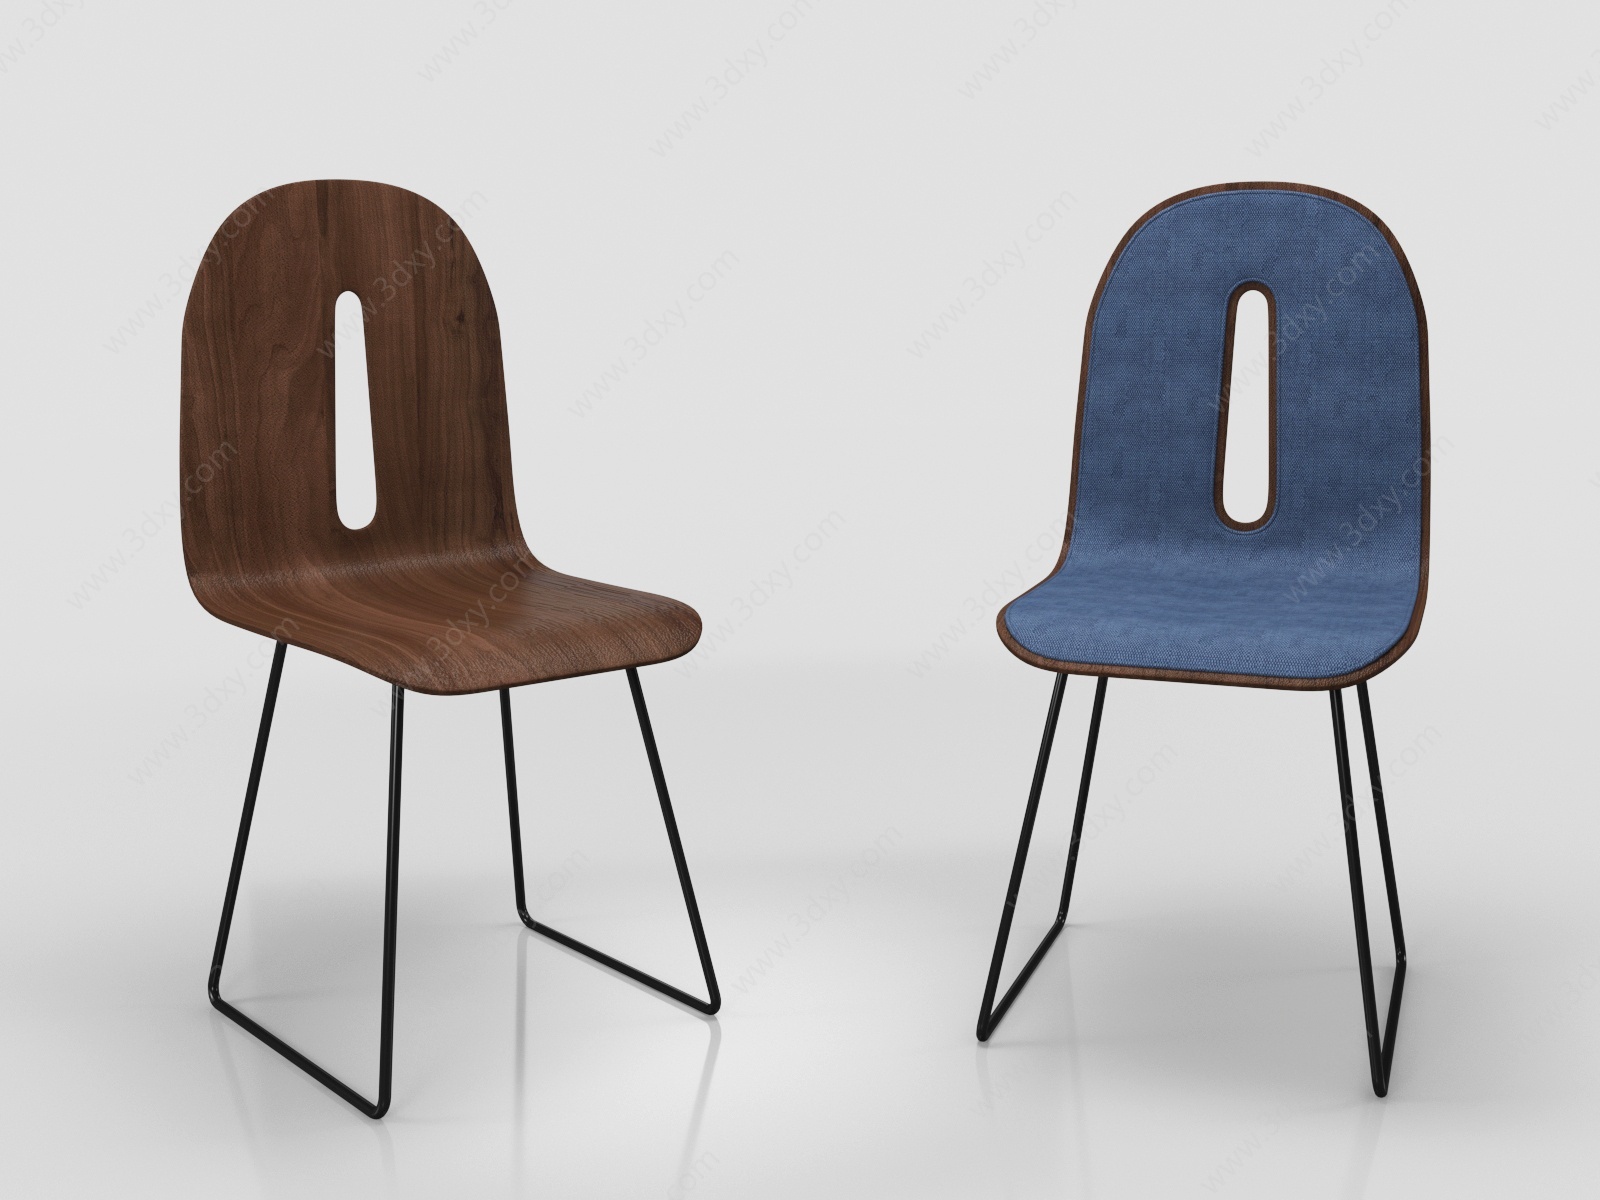 现代单椅休闲椅3D模型